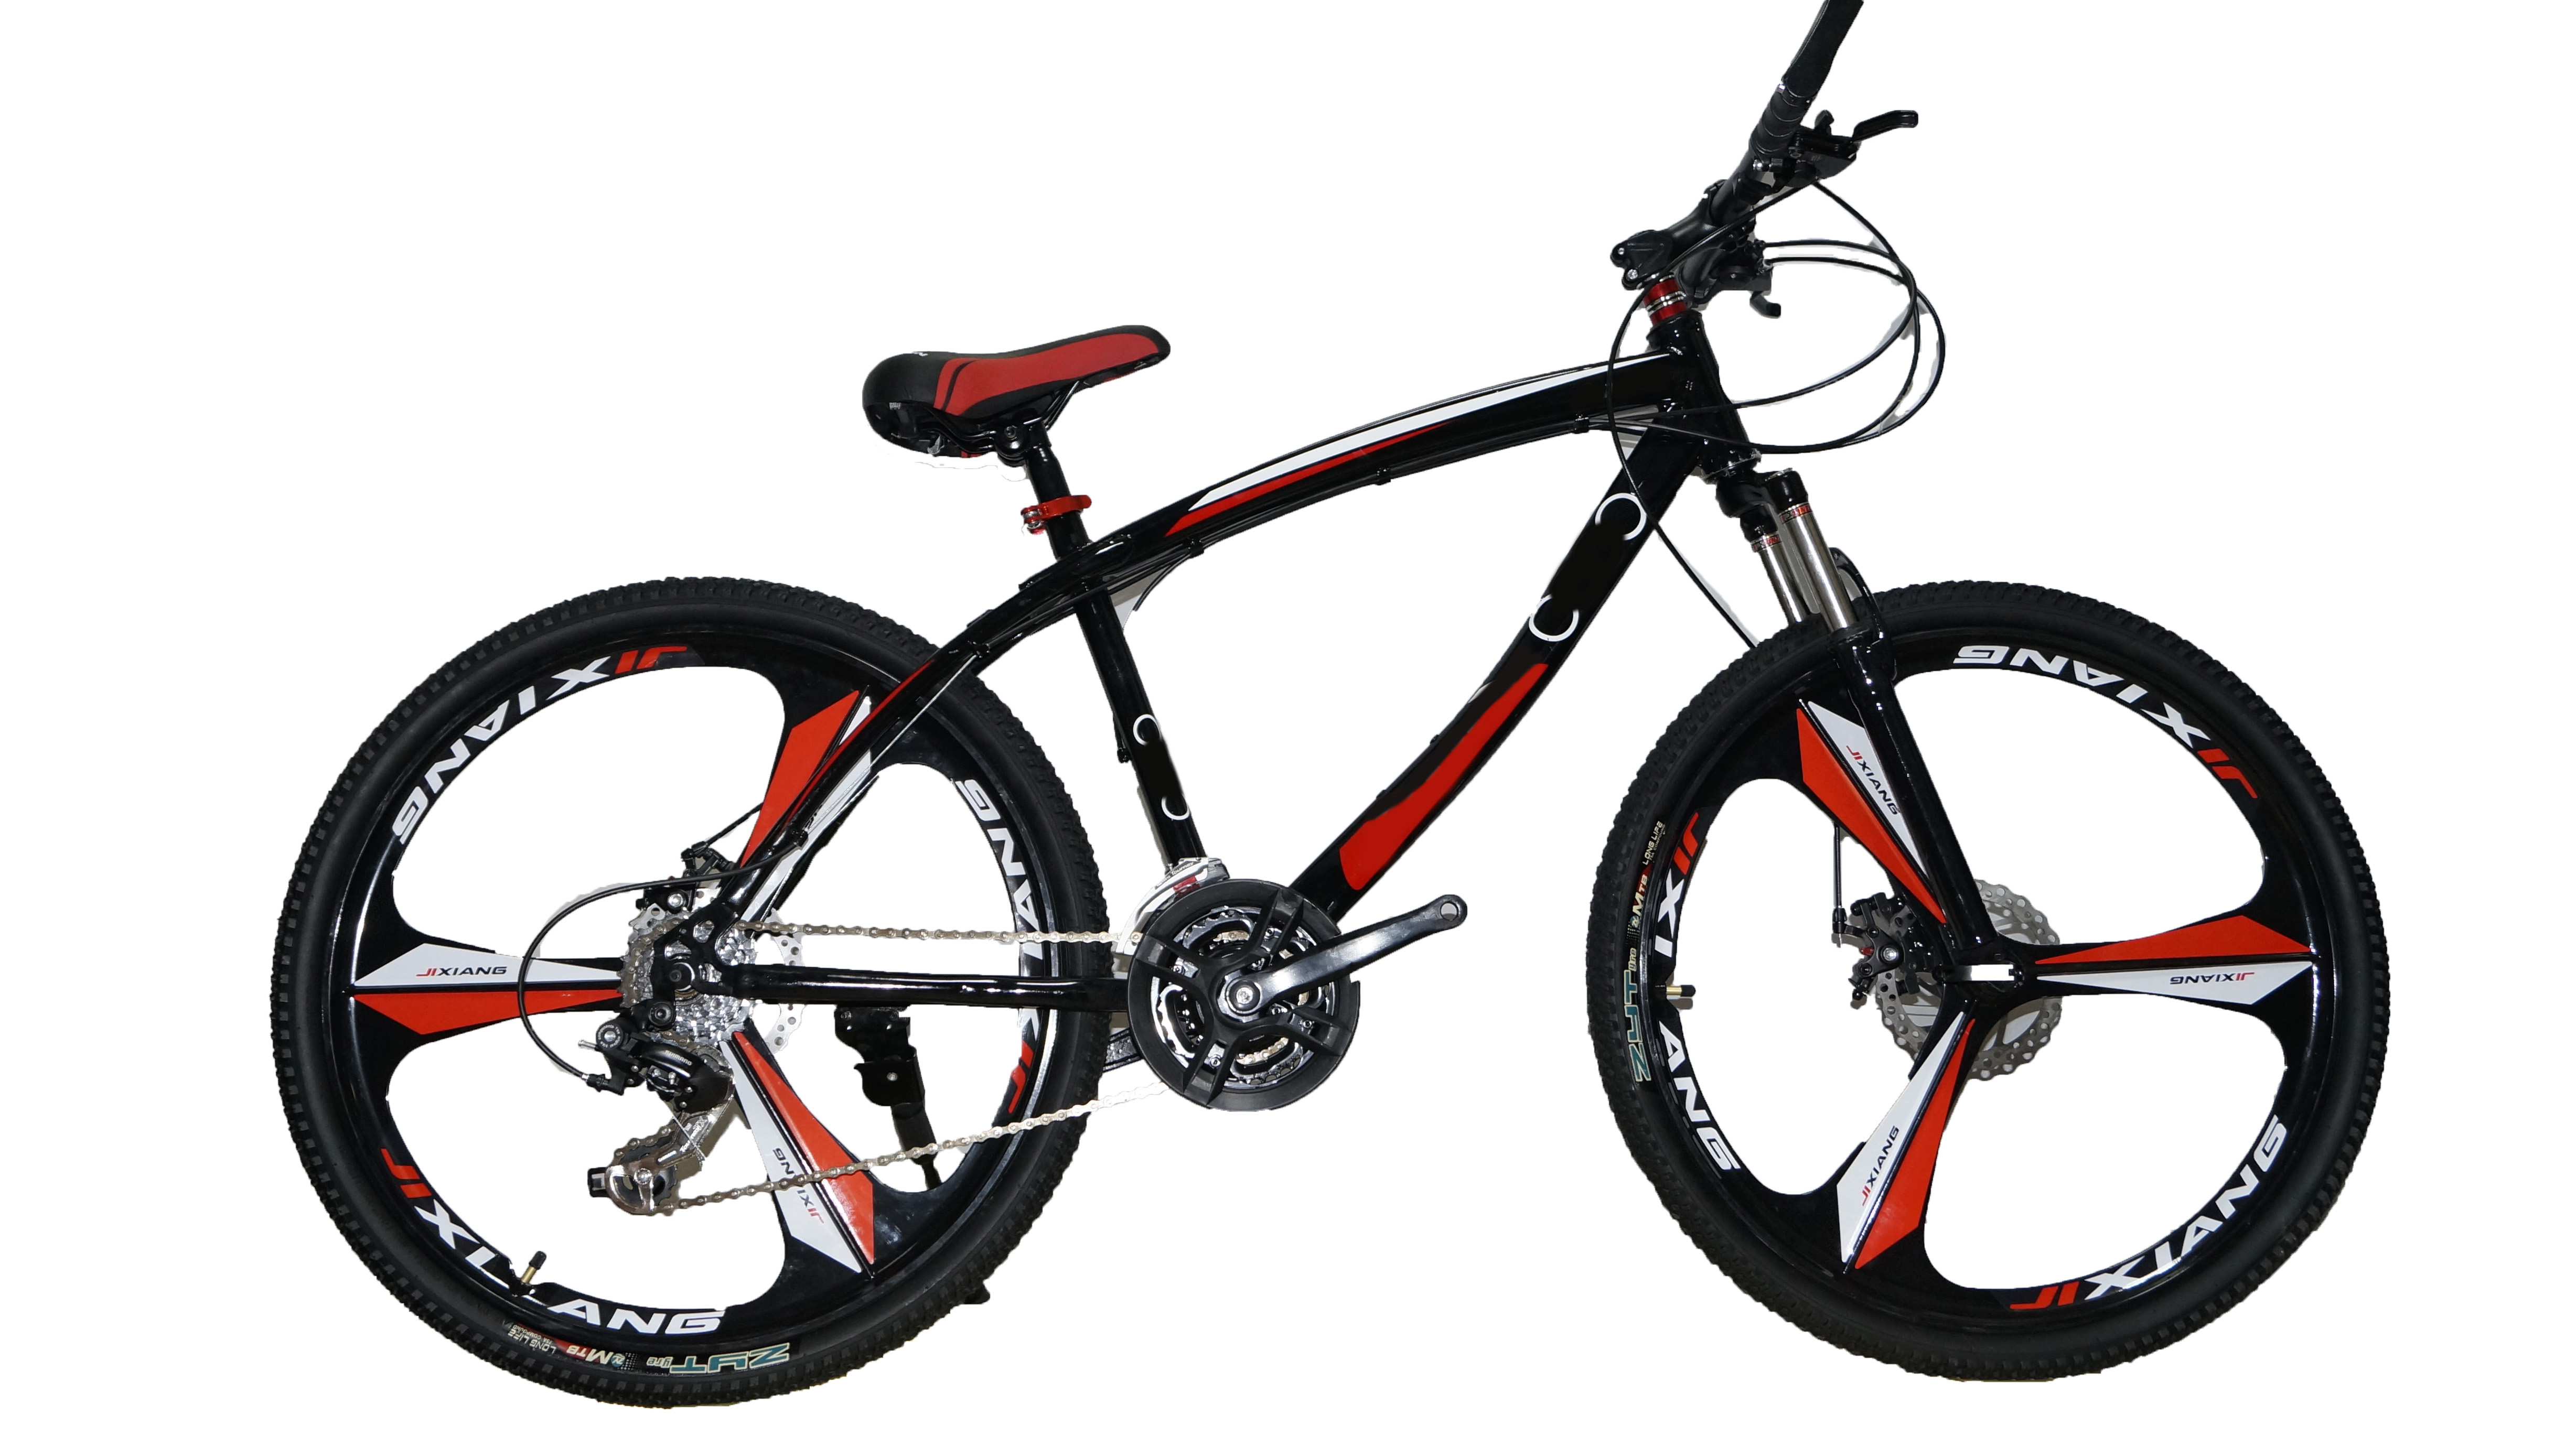 Купить велосипед в кемерово. Велосипед горный, на 26 колёсах.. Велосипед 24 Raveric 21-скорость (литье черно-красный). Велосипед Динос 26 дюймов складной. Горный велосипед Кано 26.